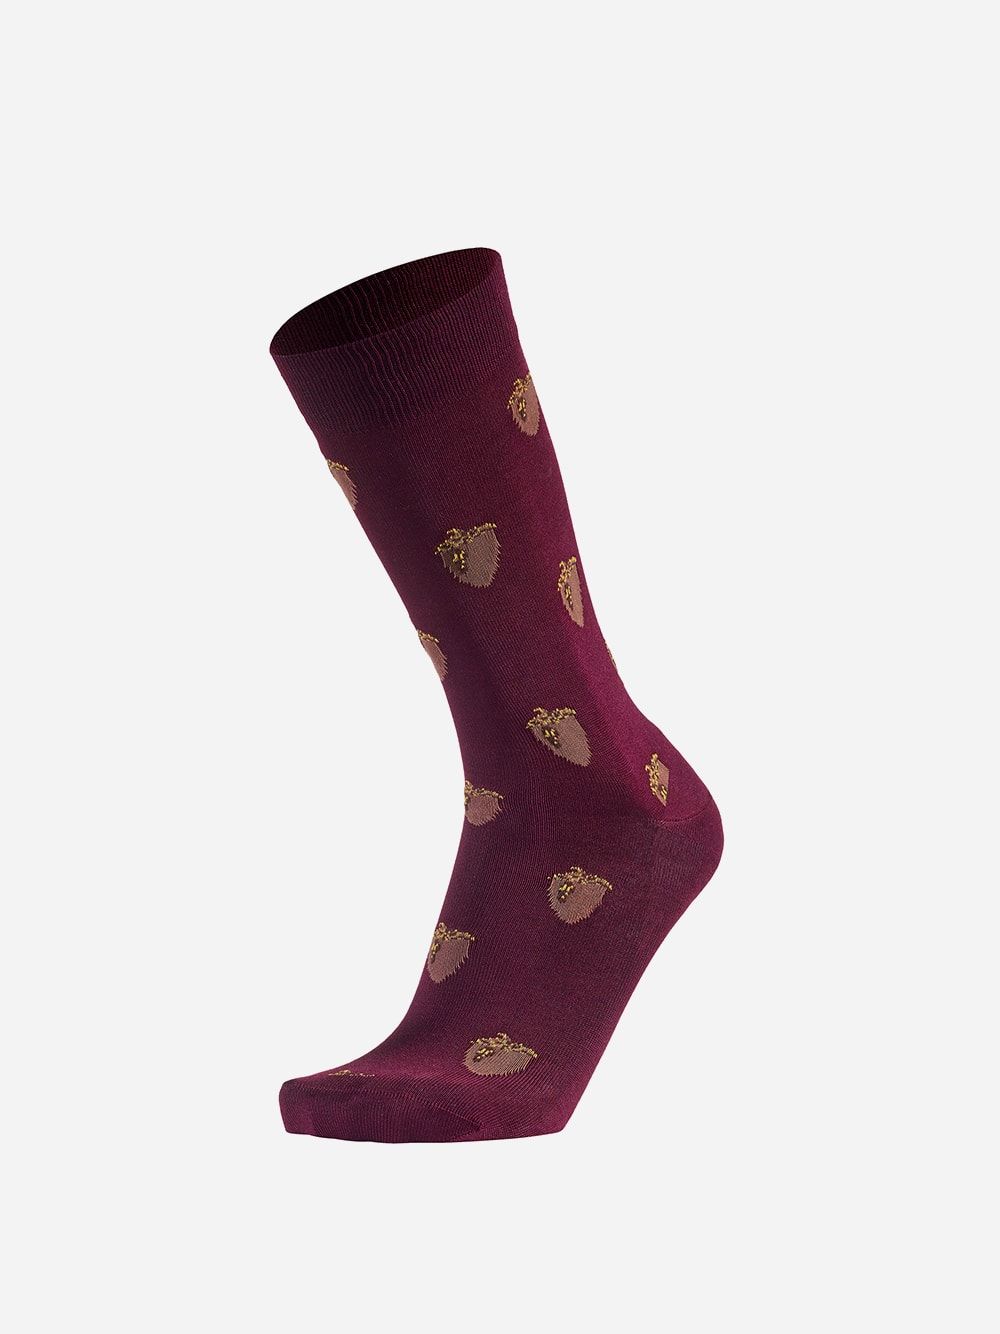 Bordeaux Socks Acorn | Westmister